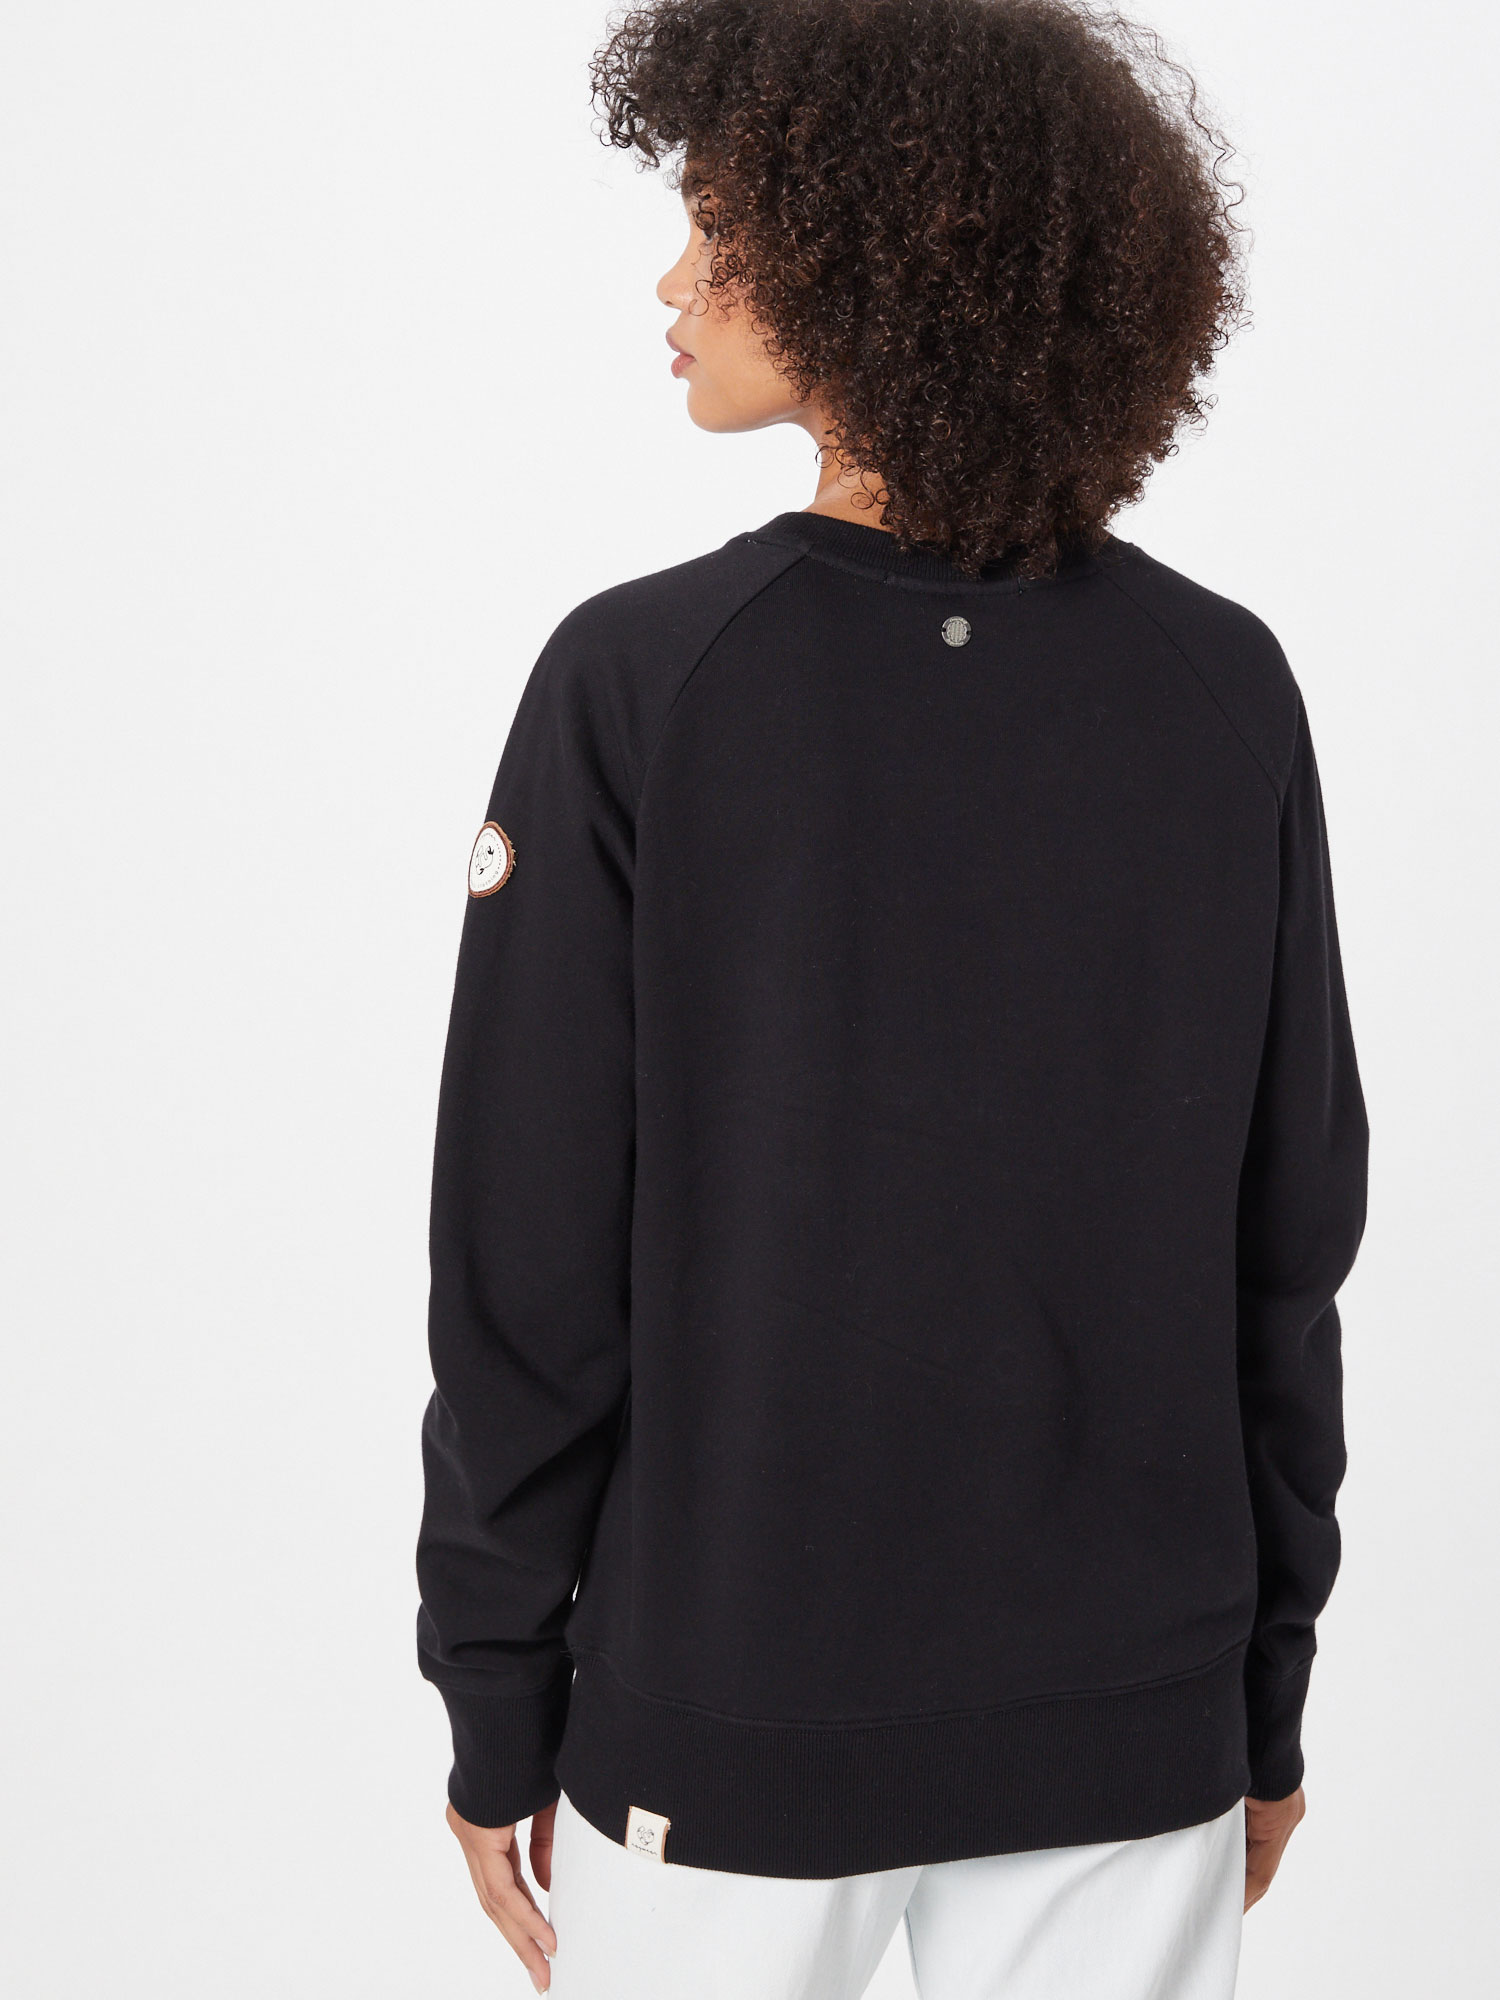 IxD6X Kobiety Ragwear Bluzka sportowa FLORA w kolorze Czarnym 